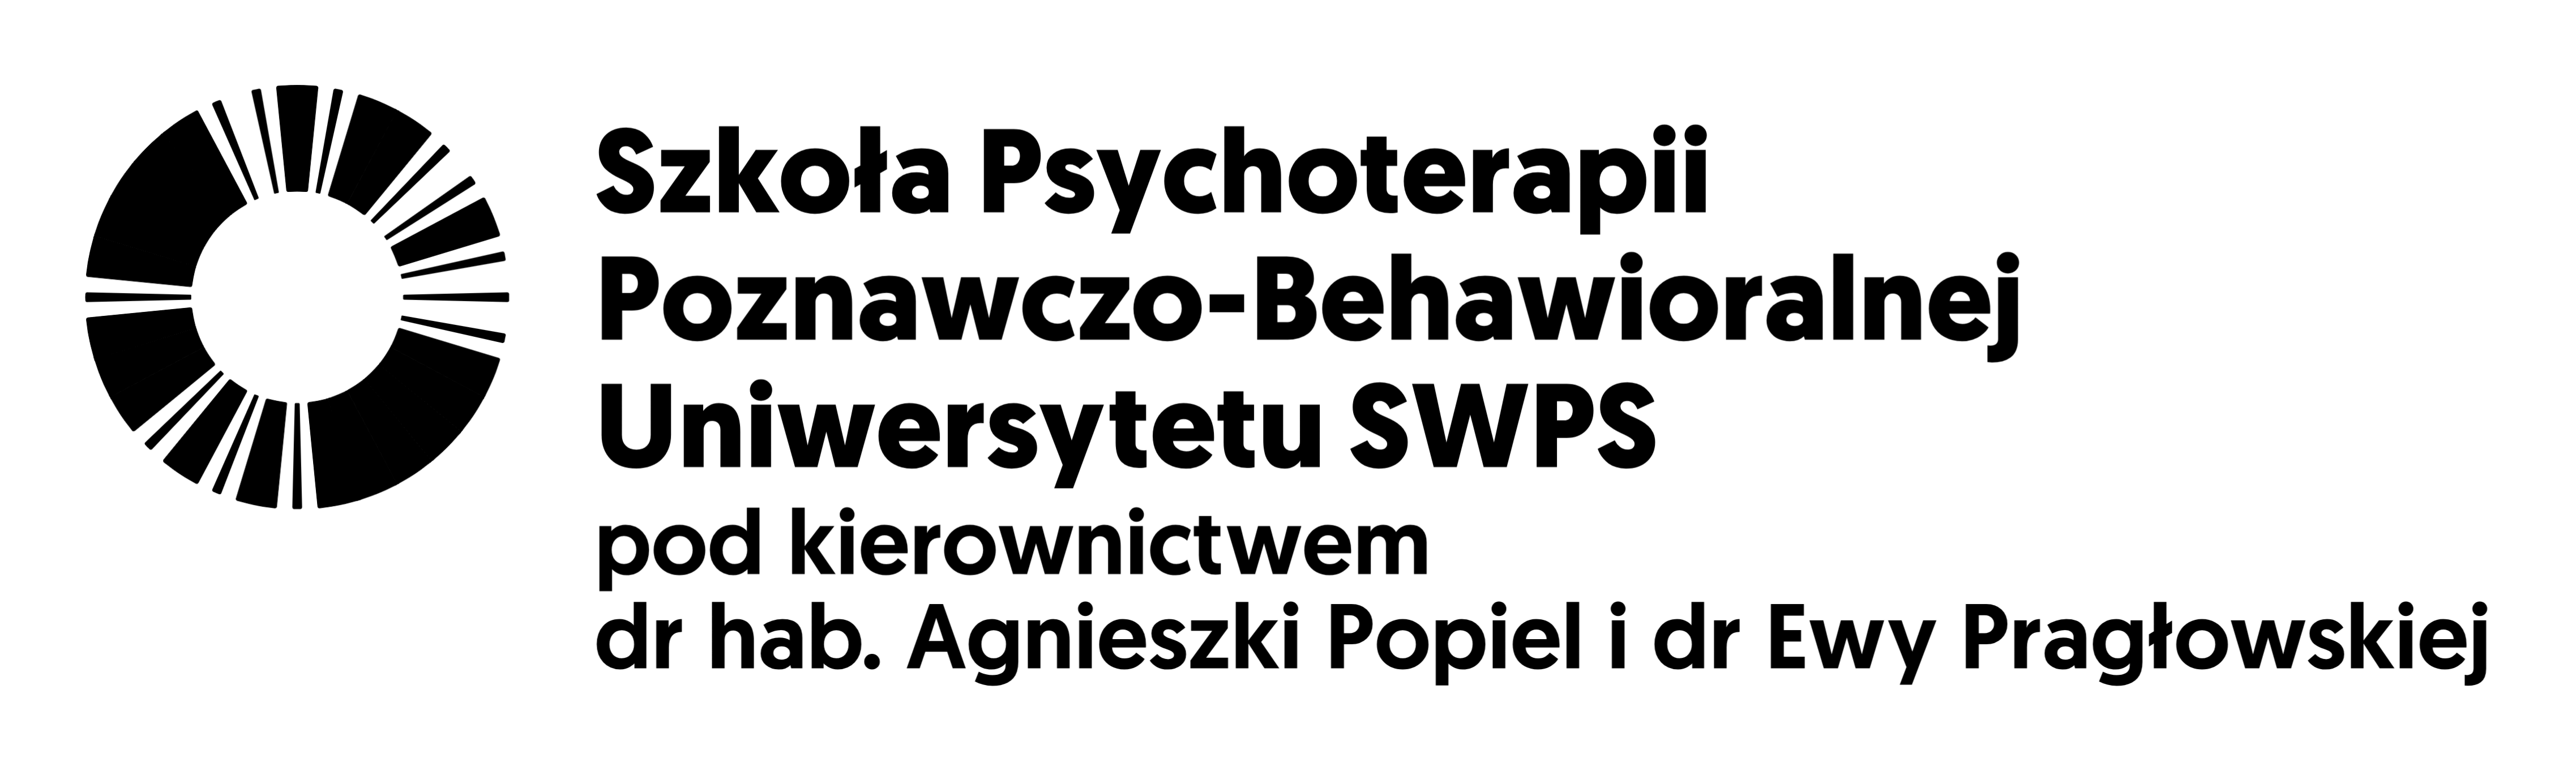 logo Szkoły Psychoterapii Poznawczo-Behawioralnej Uniwersytetu SWPS